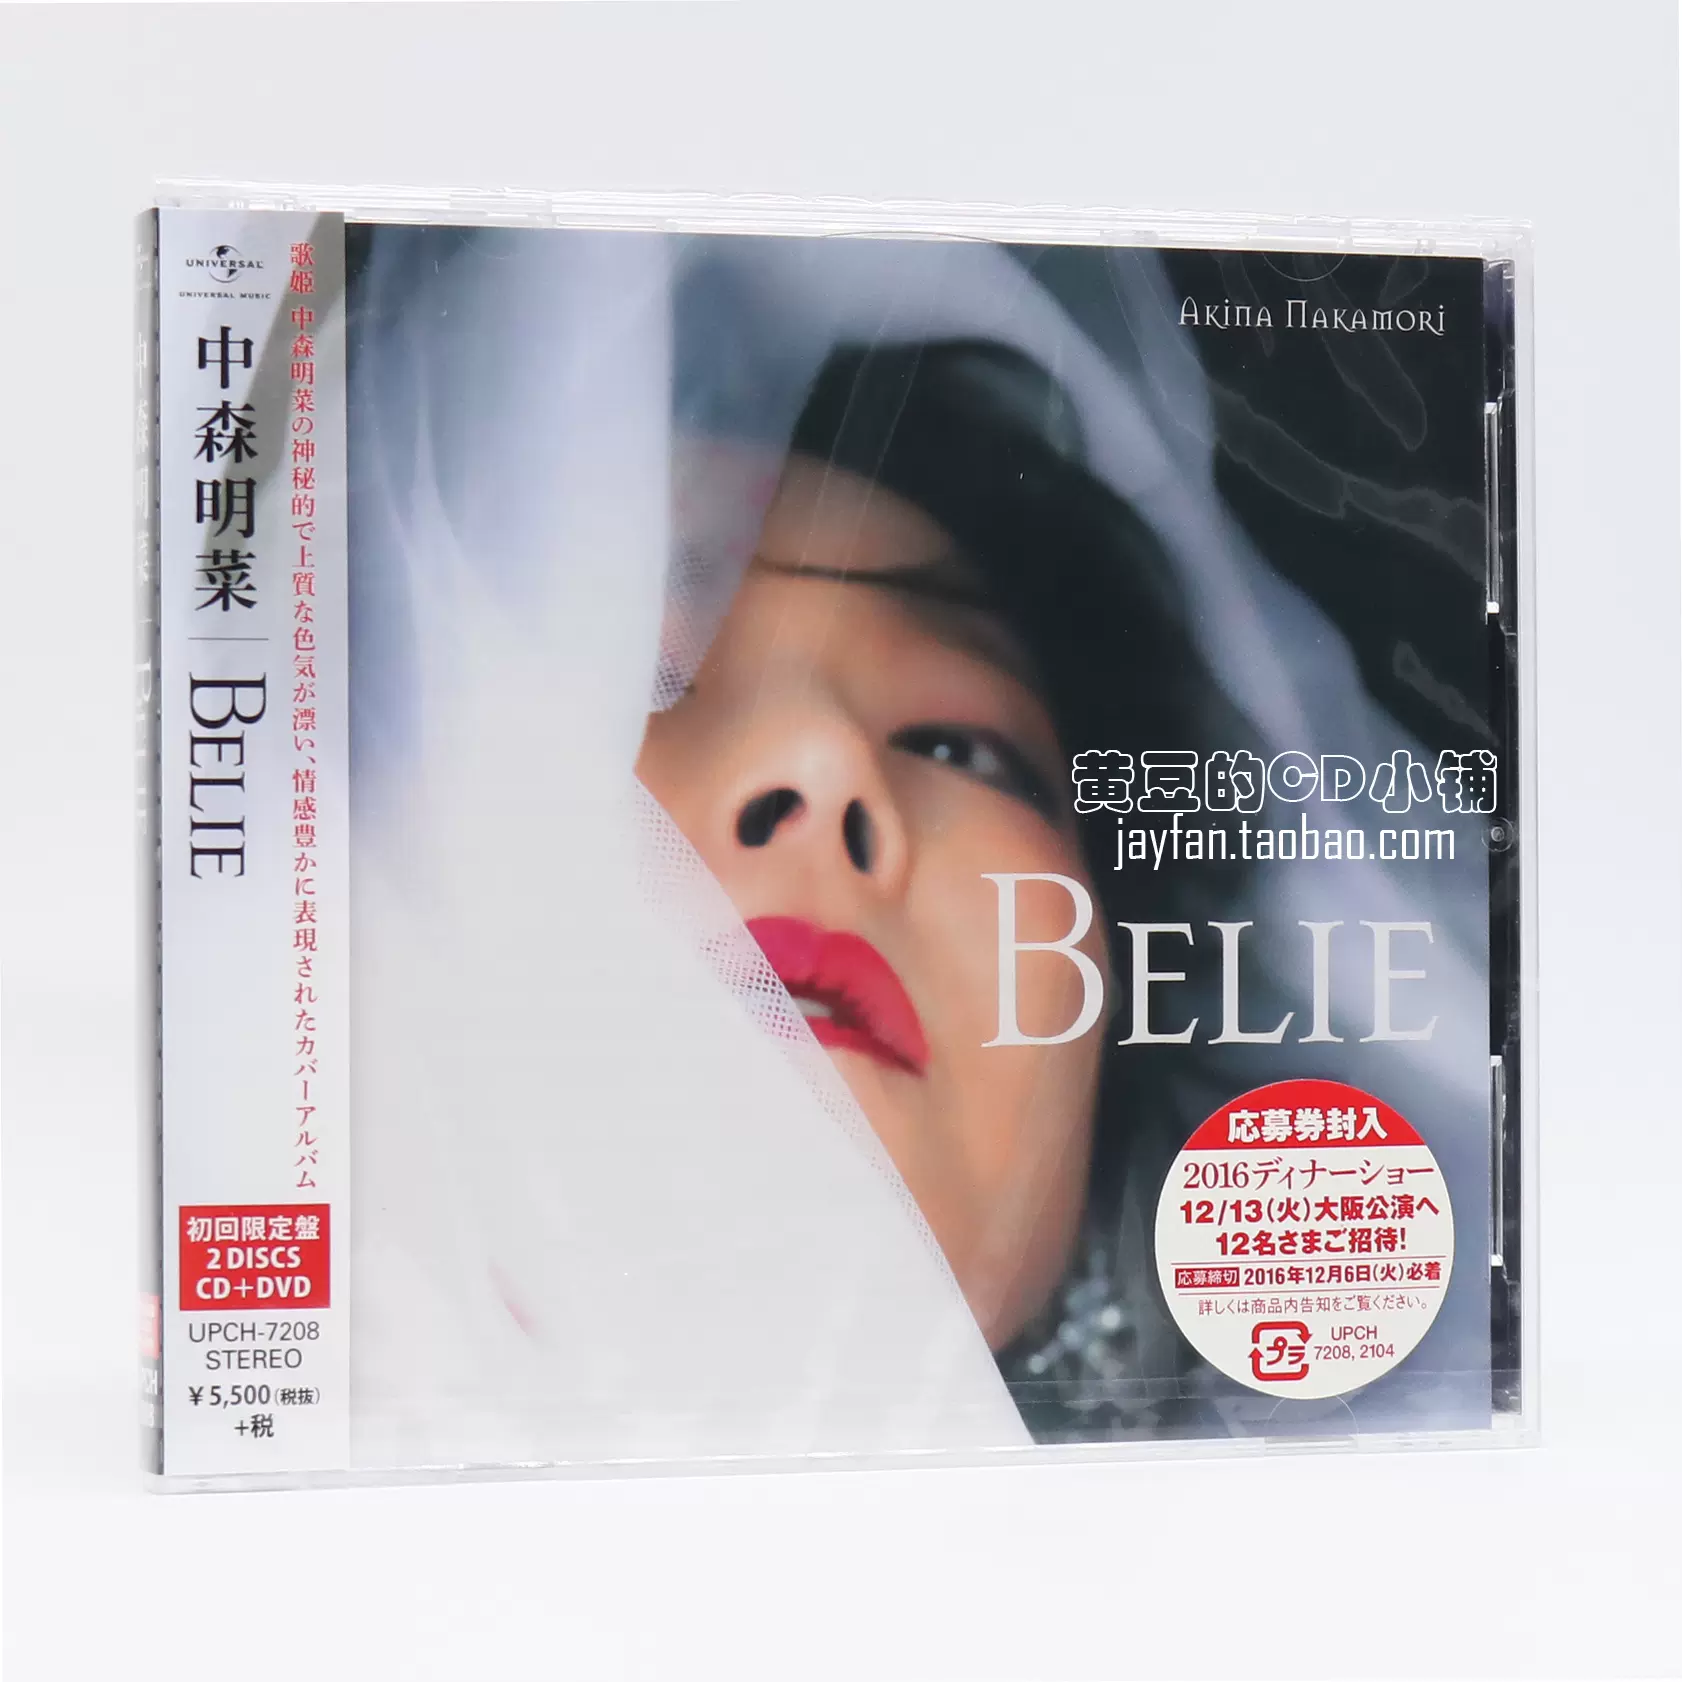 中森明菜Belie 初回限定盘CD+DVD 全新计销量-Taobao